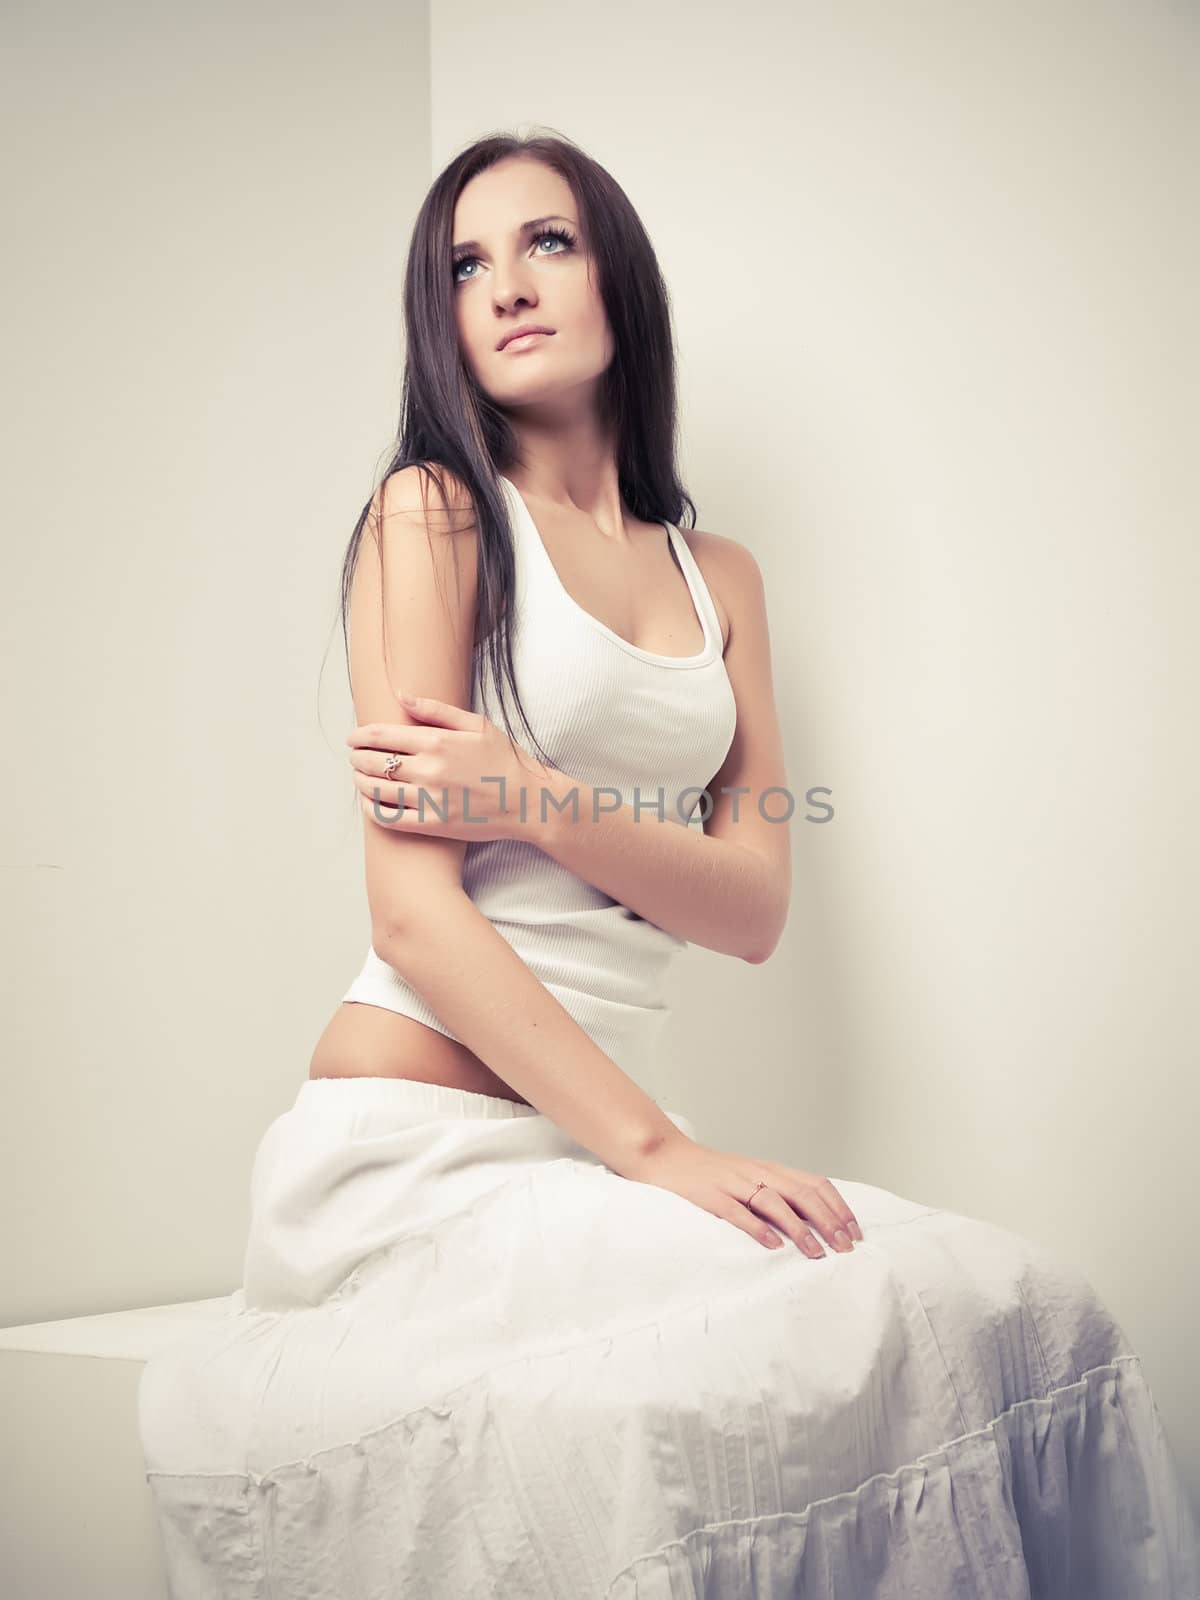 Model in white dress posing in a studio